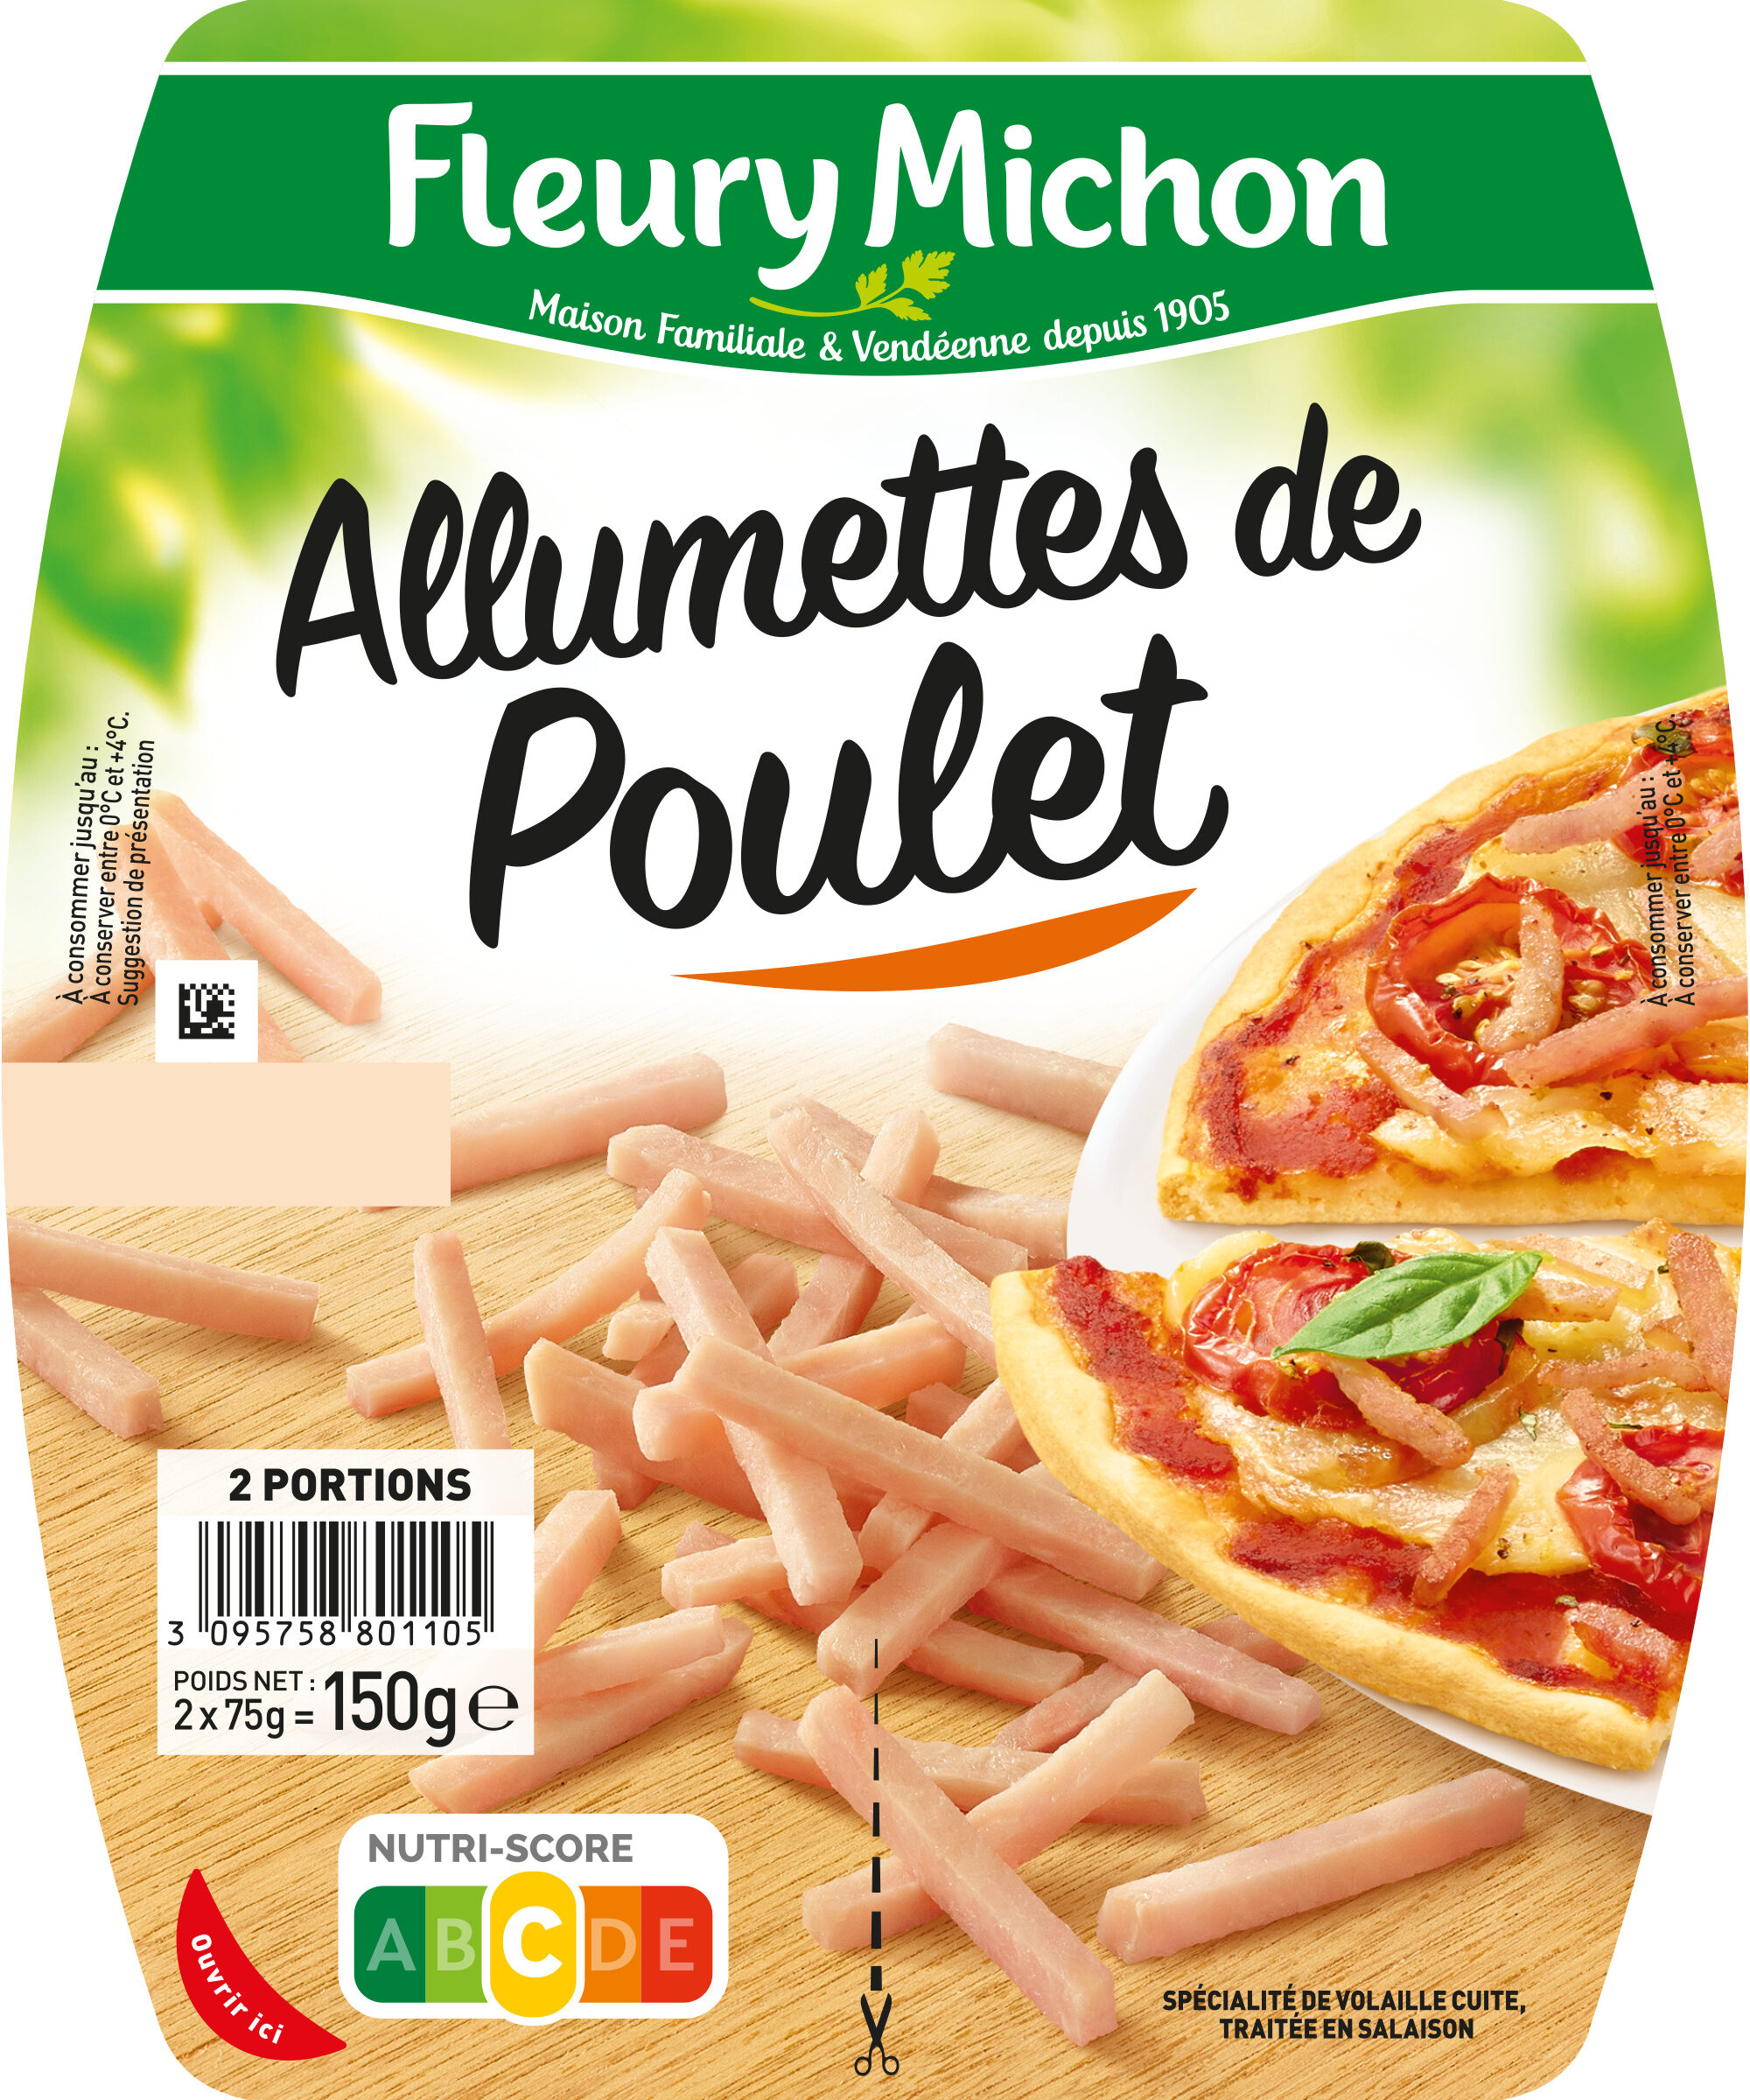 Allumettes de Poulet - Nature - Produkt - fr